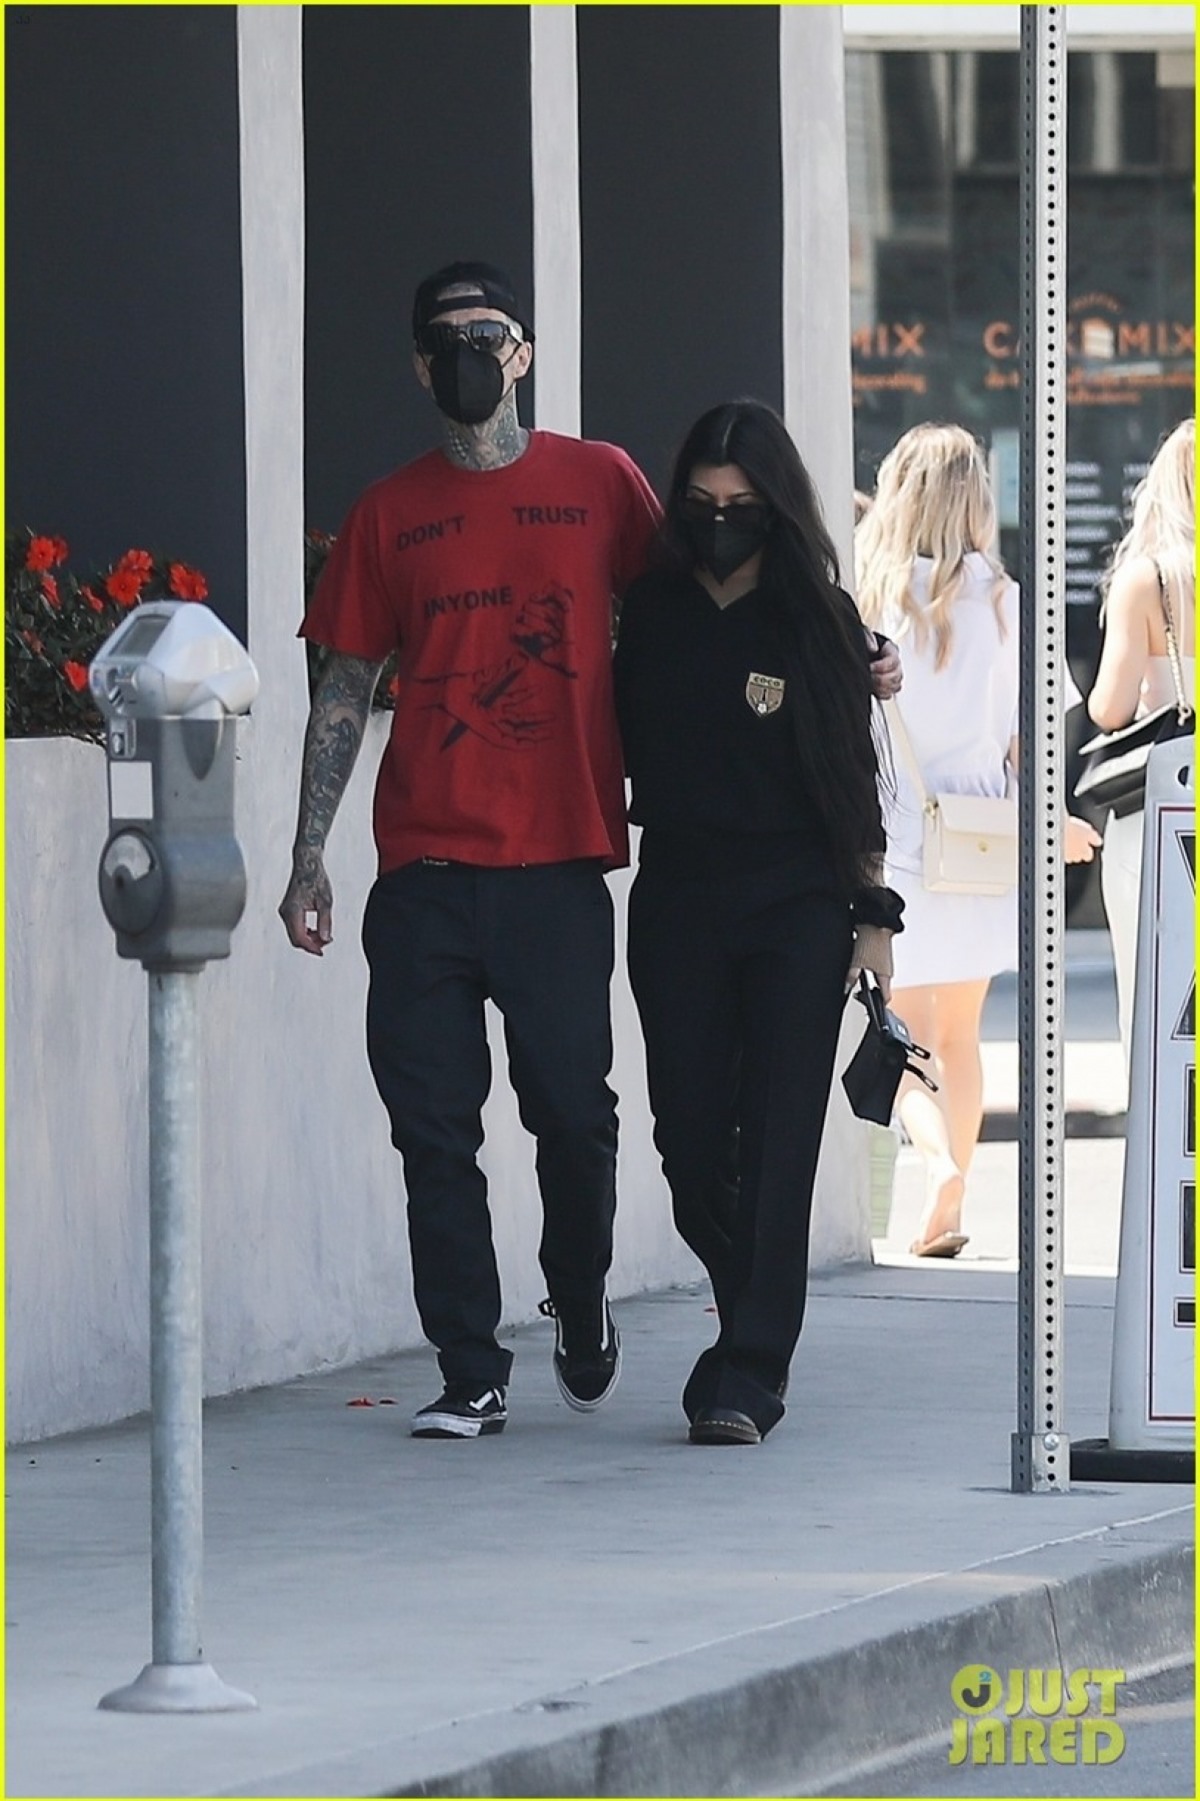 Trên People, một nguồn tin thân cận cho rằng Kourtney và Travis Barker dành nhiều thời gian bên nhau tại nhà của bà Kris Jenner./.